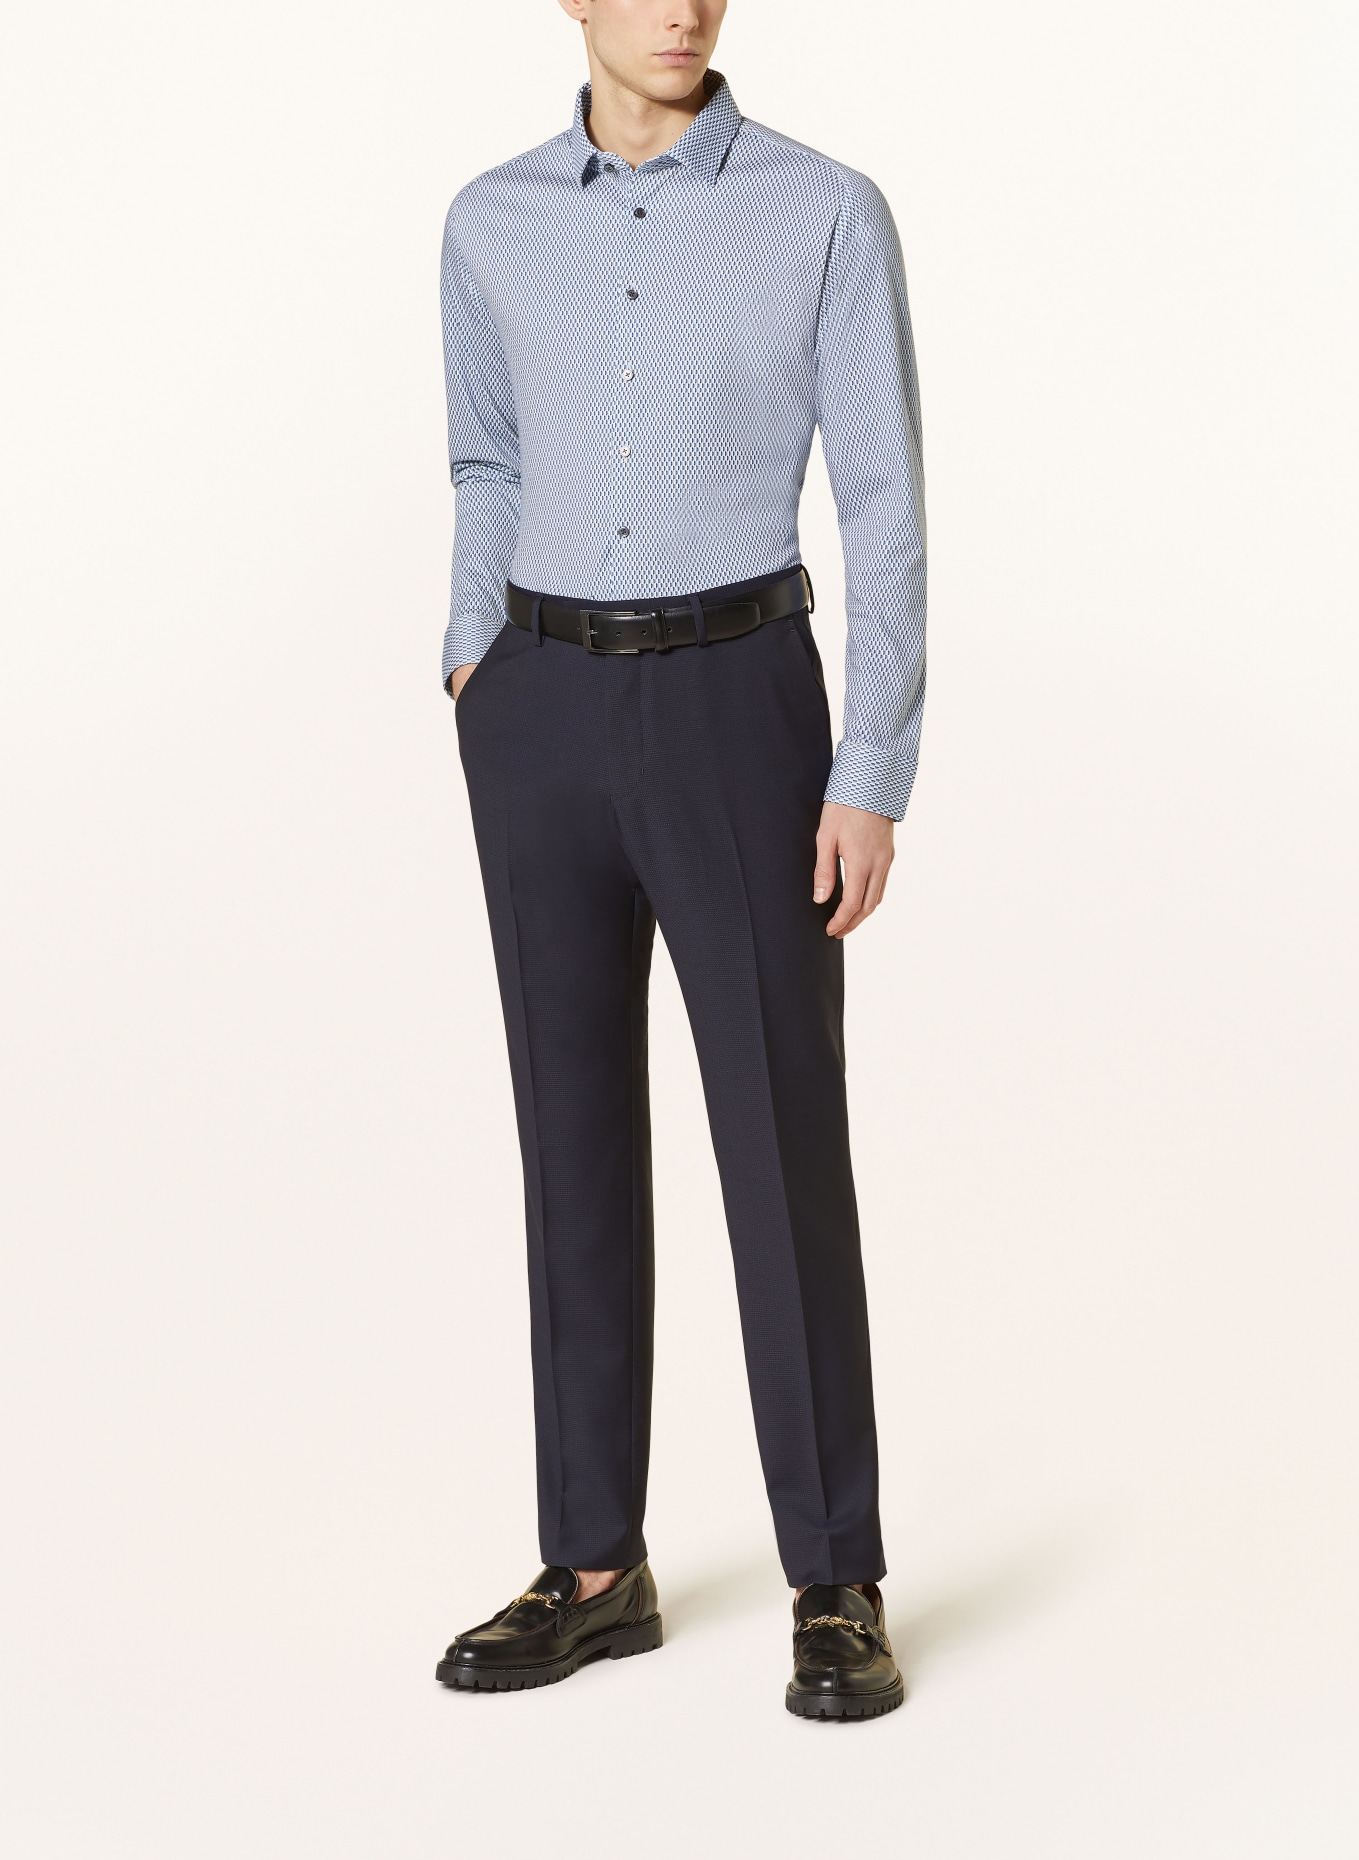 DESOTO Jersey shirt slim fit, Color: LIGHT BLUE/ BLUE/ LIGHT ORANGE (Image 2)